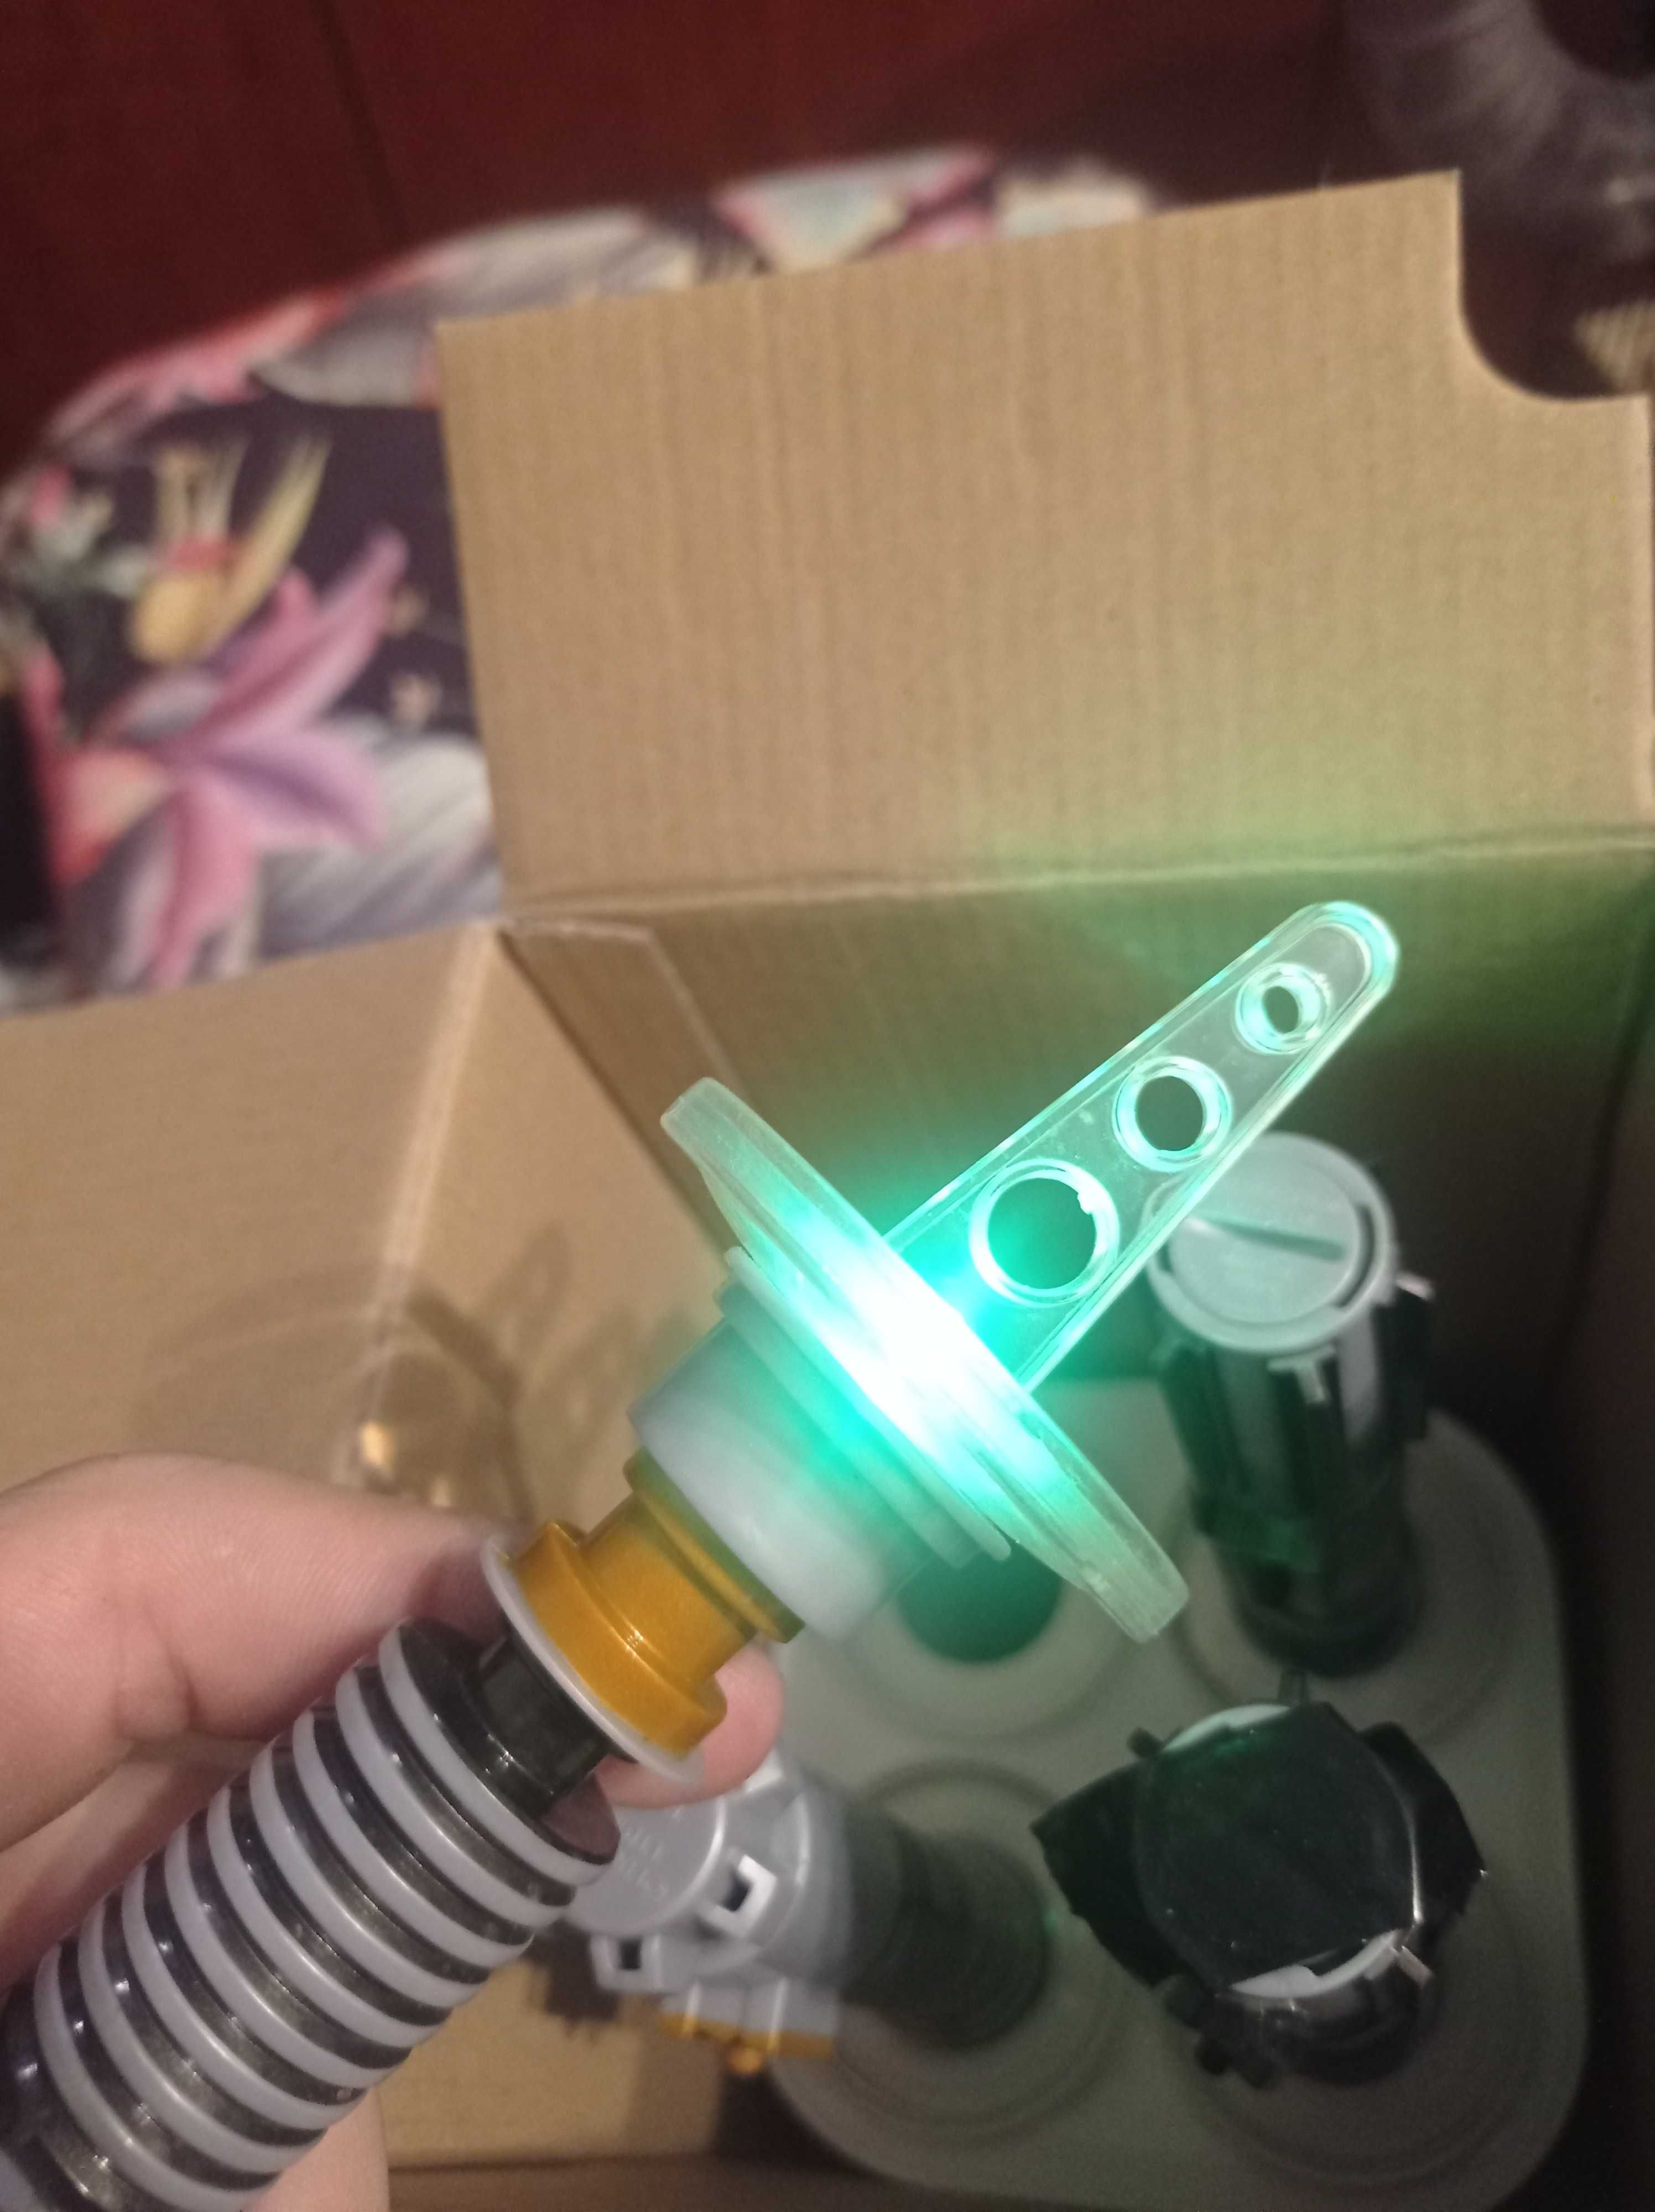 Star Wars lightsabers ice pop maker zestaw do lodów miecze świetlne